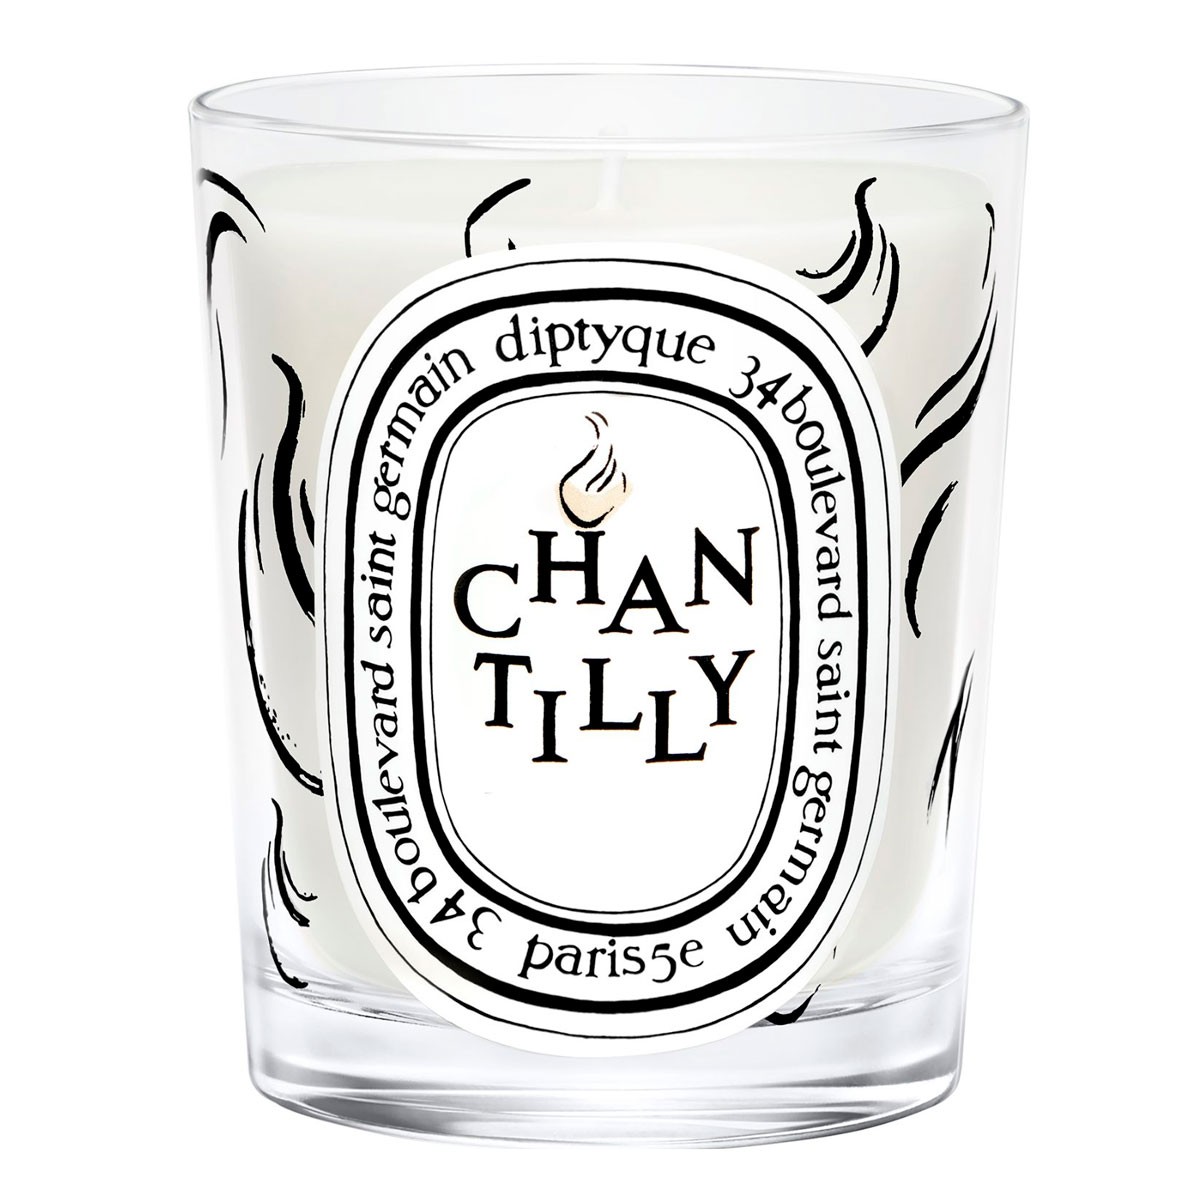 Diptyque Chantilly - Vela Perfumada 190g Edición Limitada